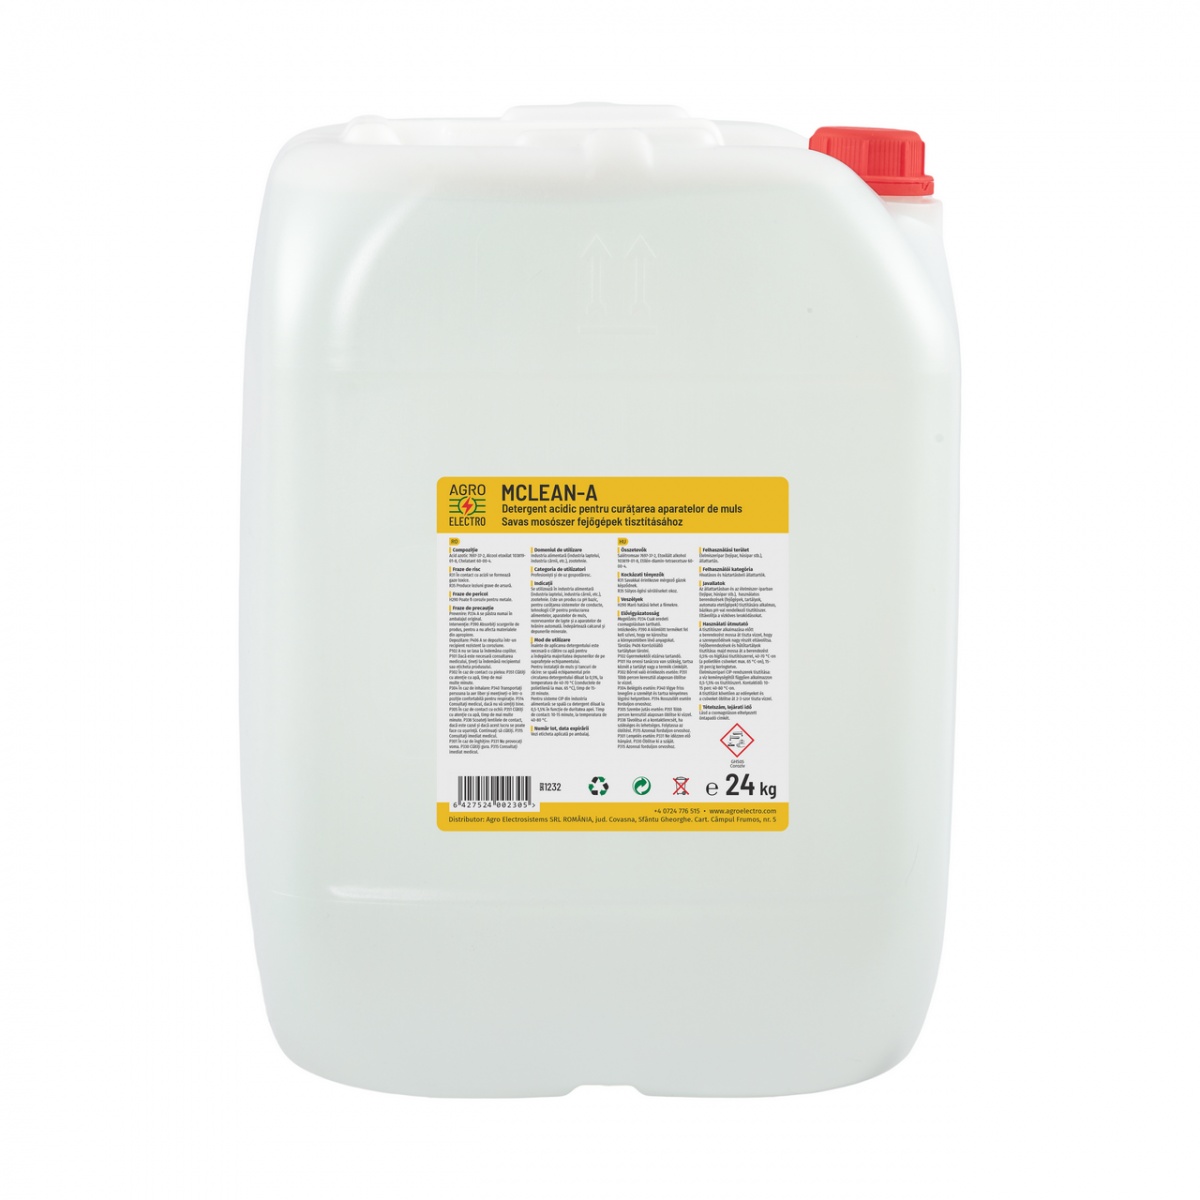 Detergent acidic pentru curățarea aparatelor de muls, MCLEAN-A, 24 kg